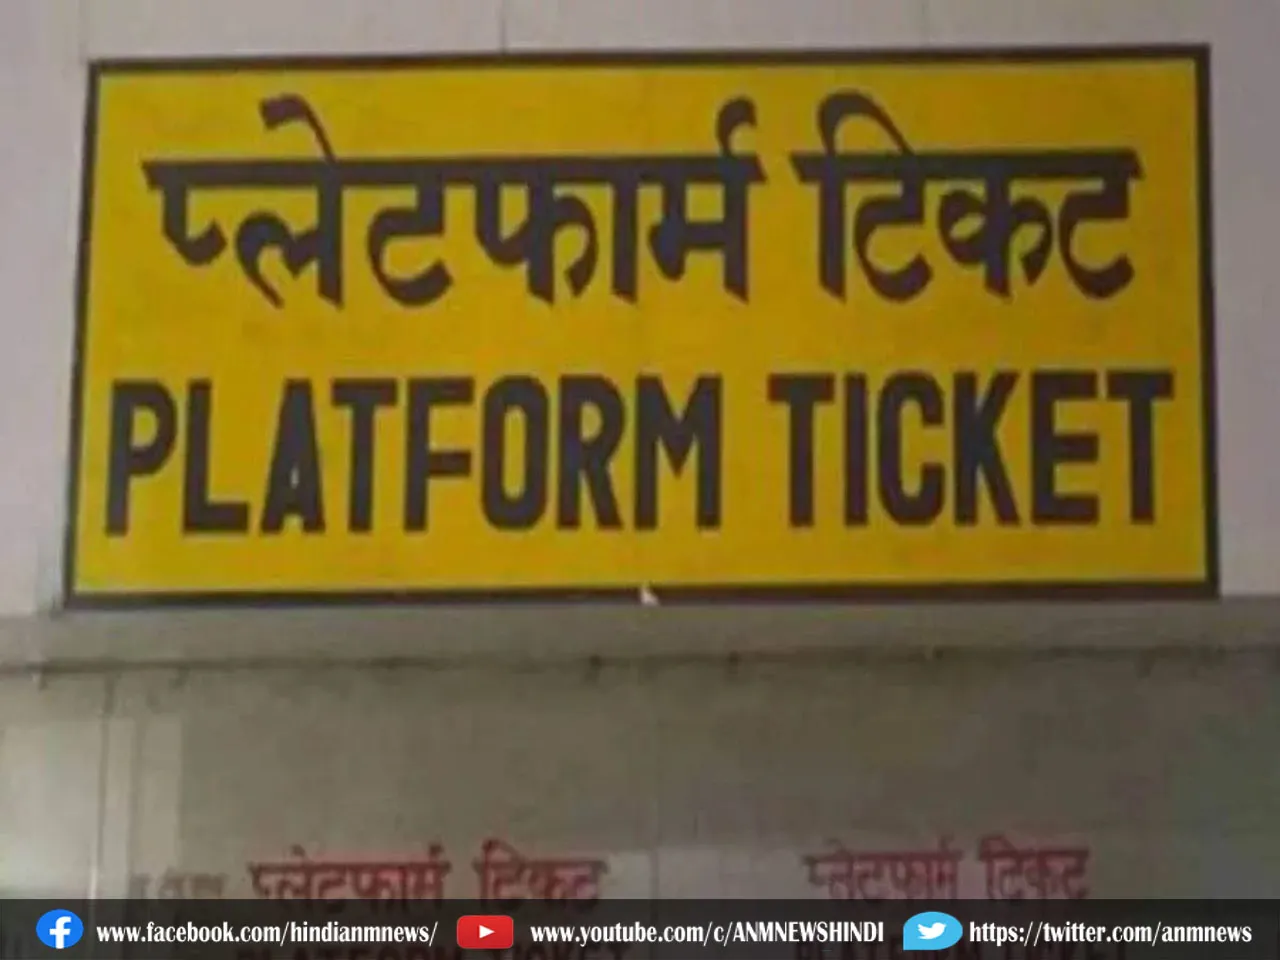 Indian Railways: अब चुटकियों में बुक होगा प्लेटफॉर्म टिकट